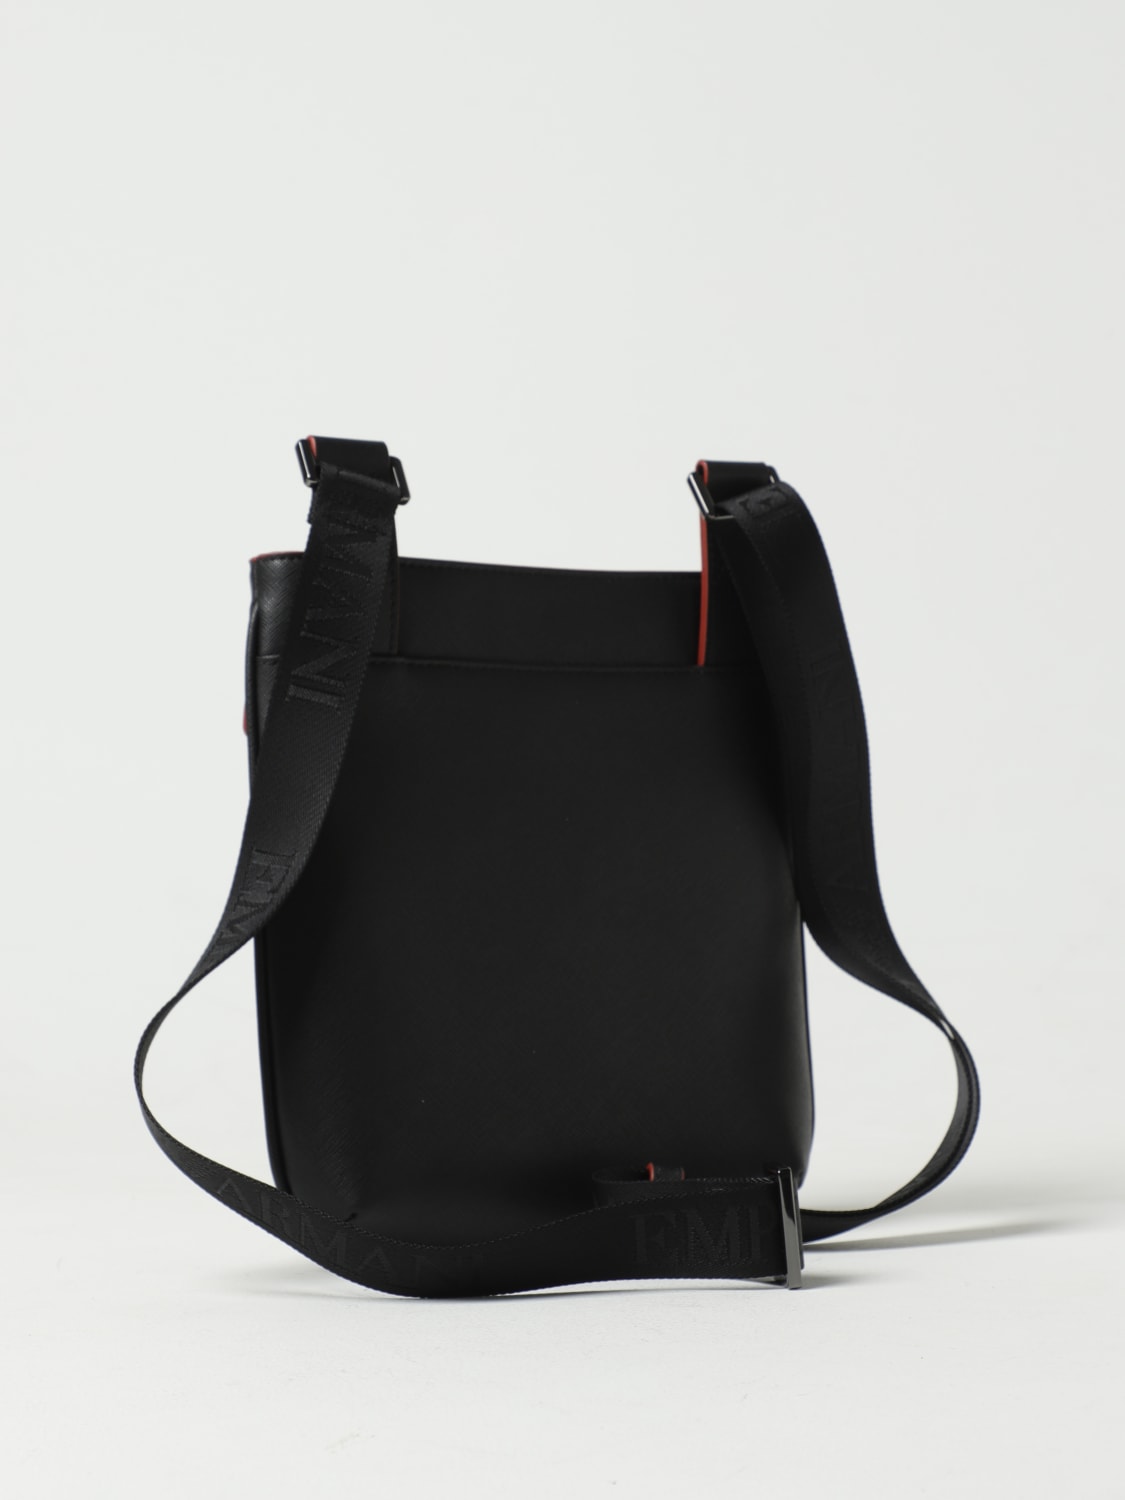 Prada - Men's Saffiano Leather Shoulder Bag Messenger - Black - Synthetic